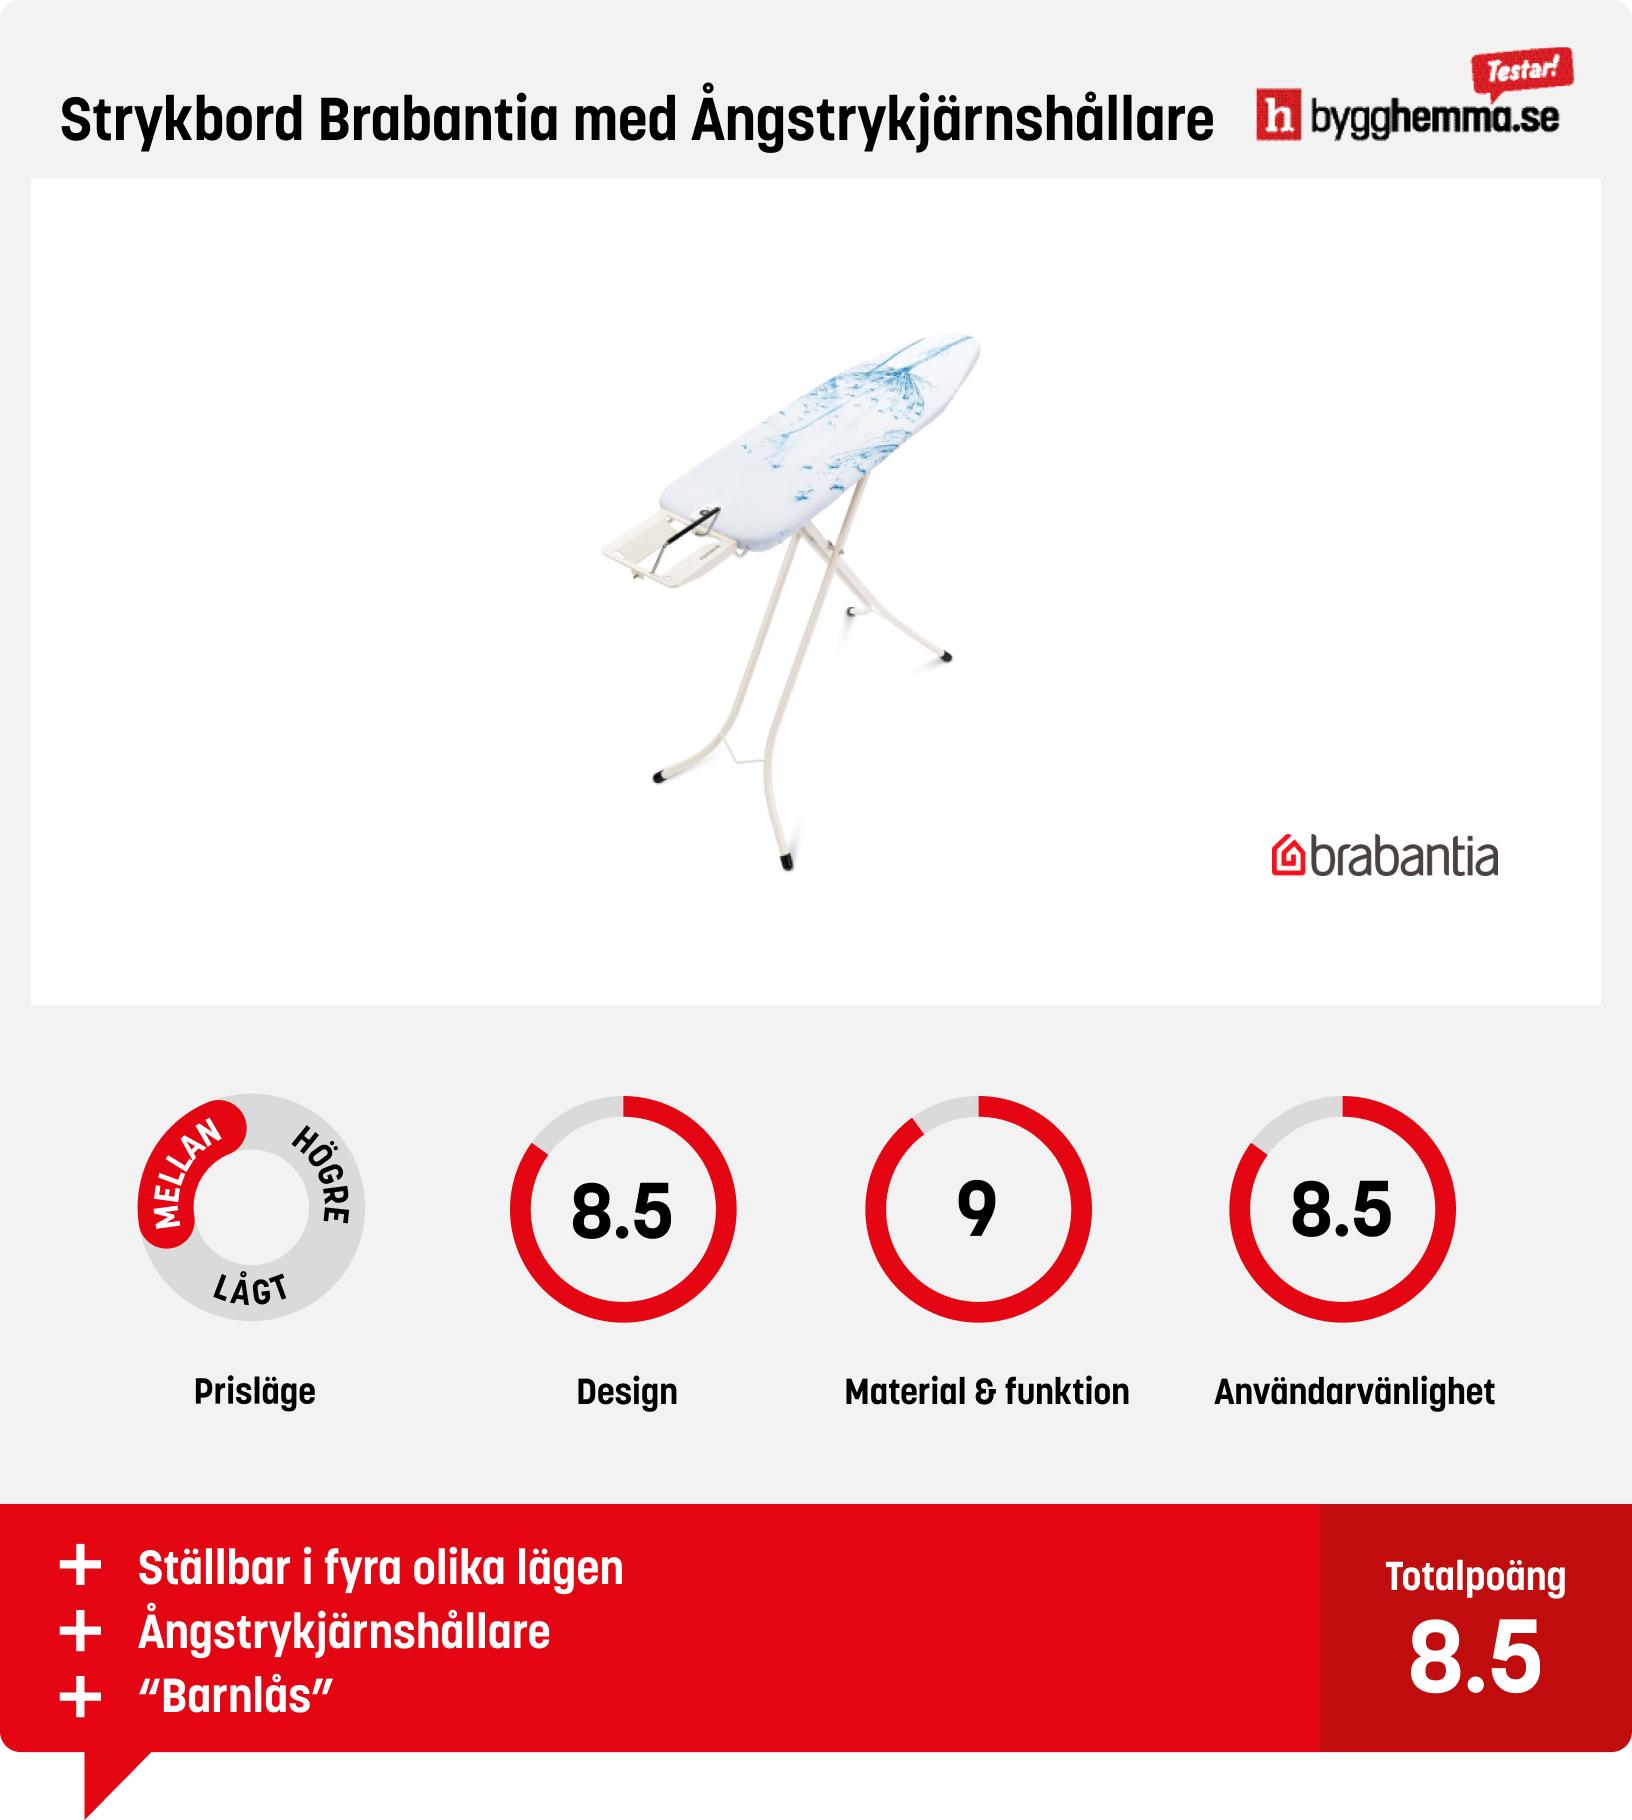 Strykbräda bäst i test - Strykbord Brabantia med Ångstrykjärnshållare